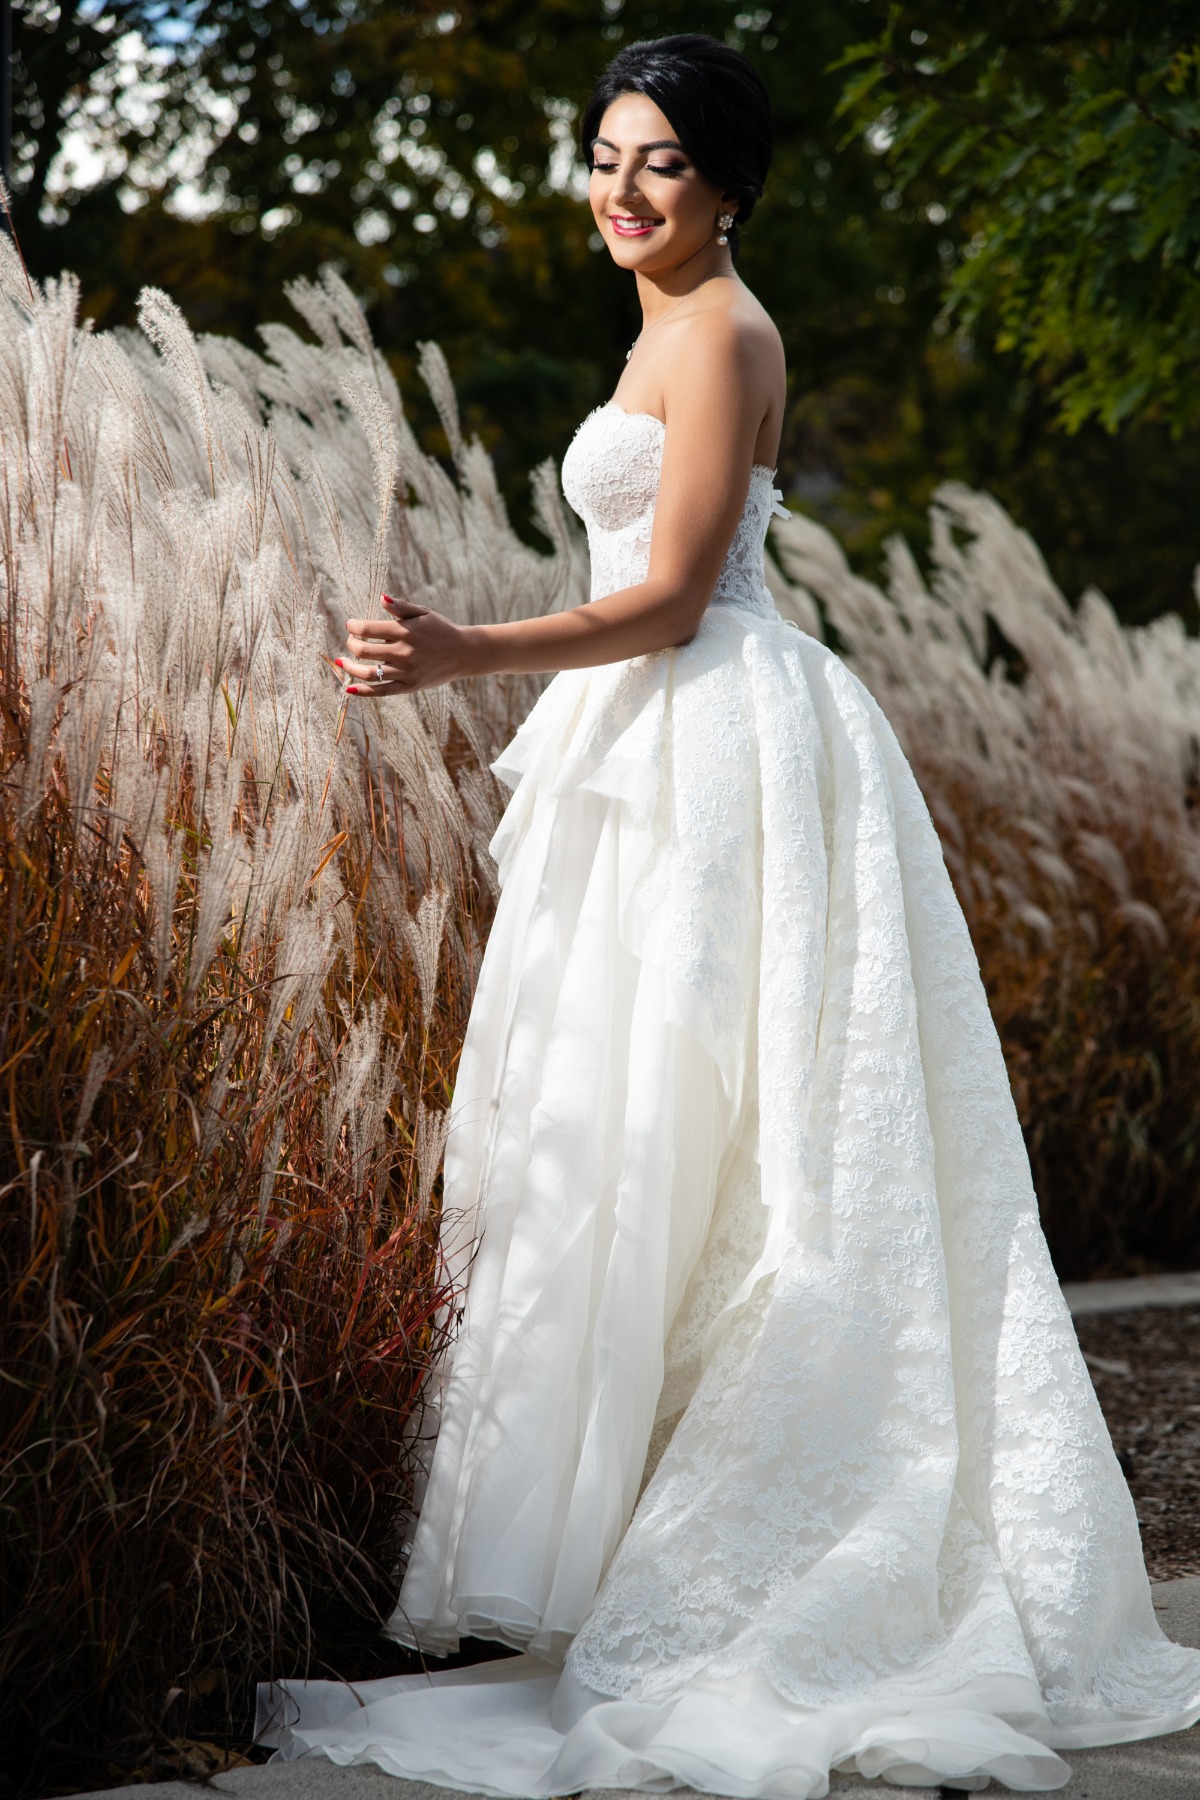 42-bride-in-reem-acra-wedding-gown